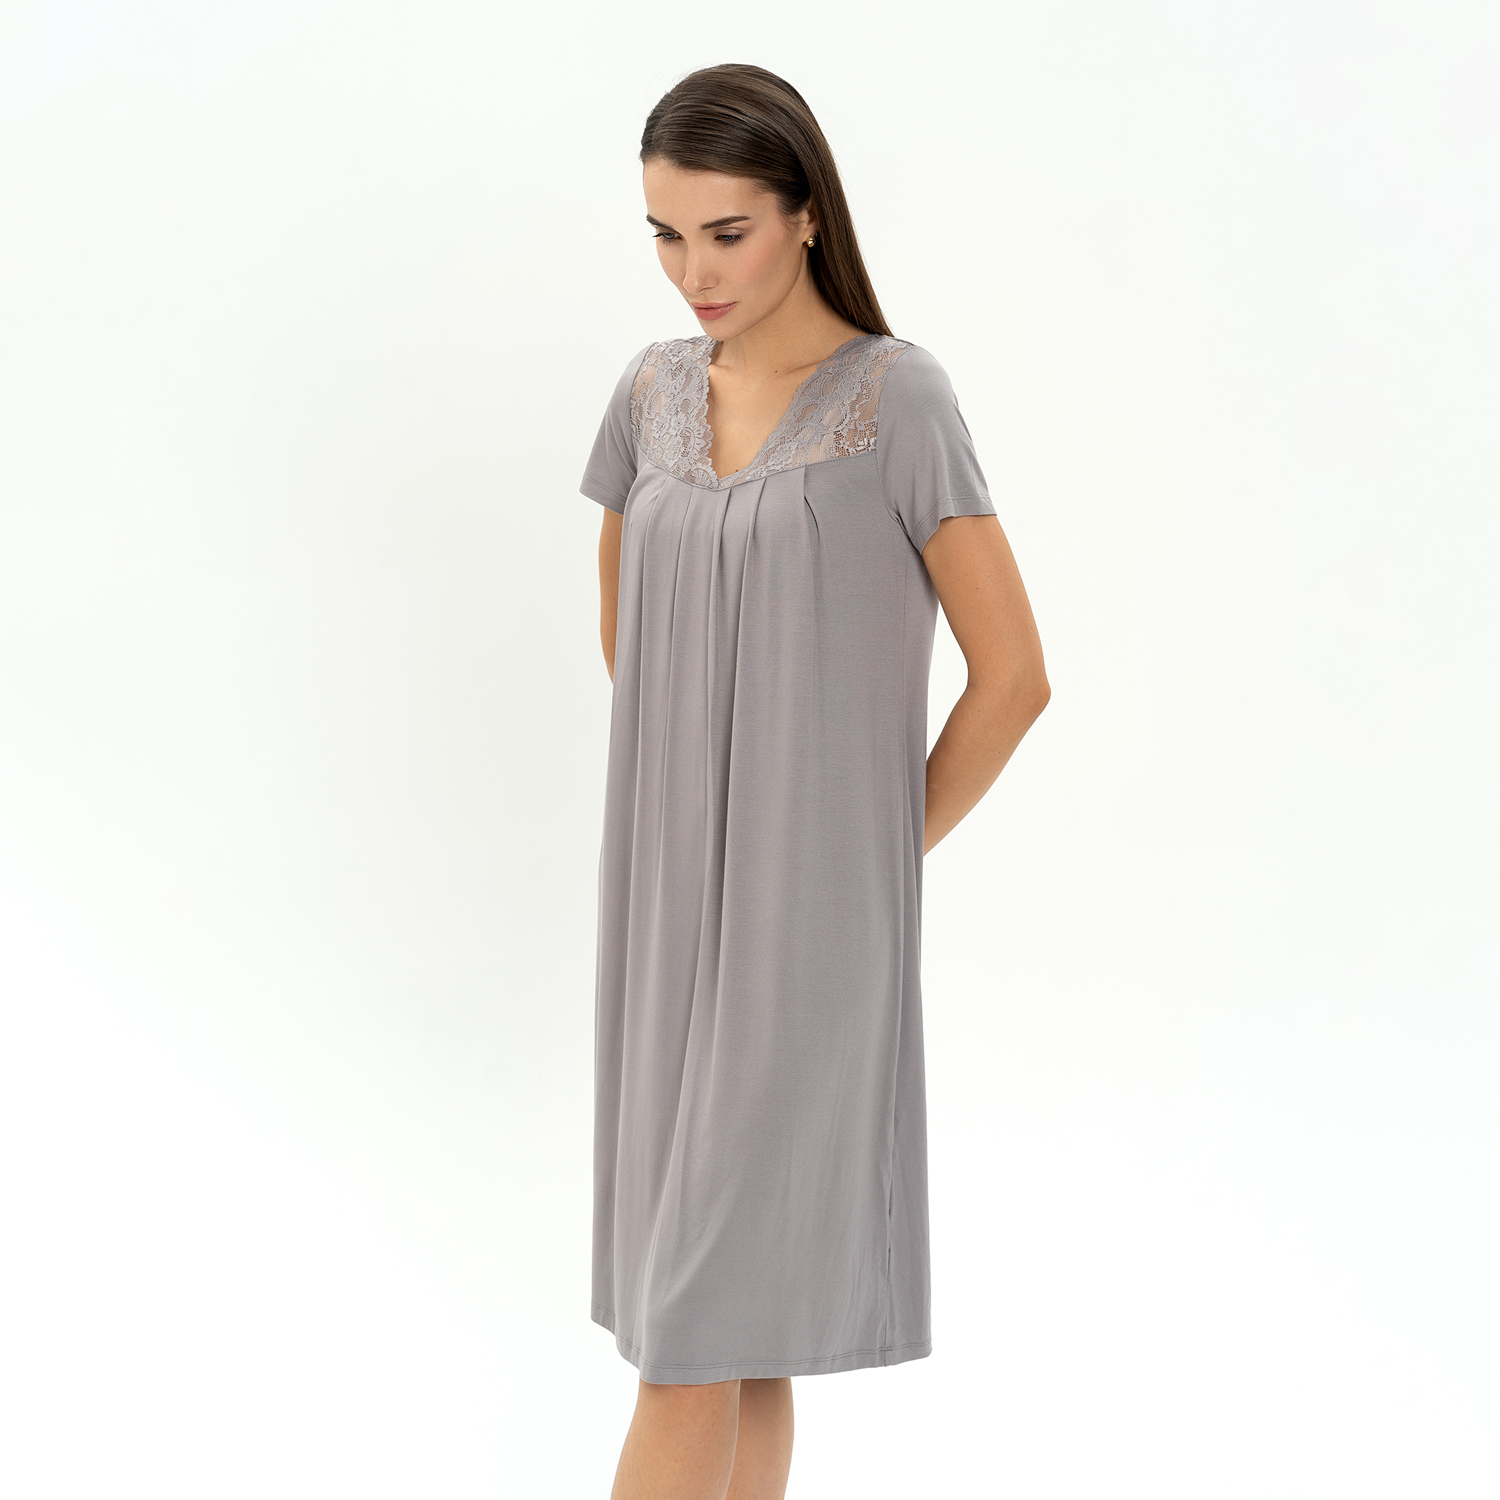 Сорочка Doris Cooper II CozyHome, цвет серый, размер 54-56